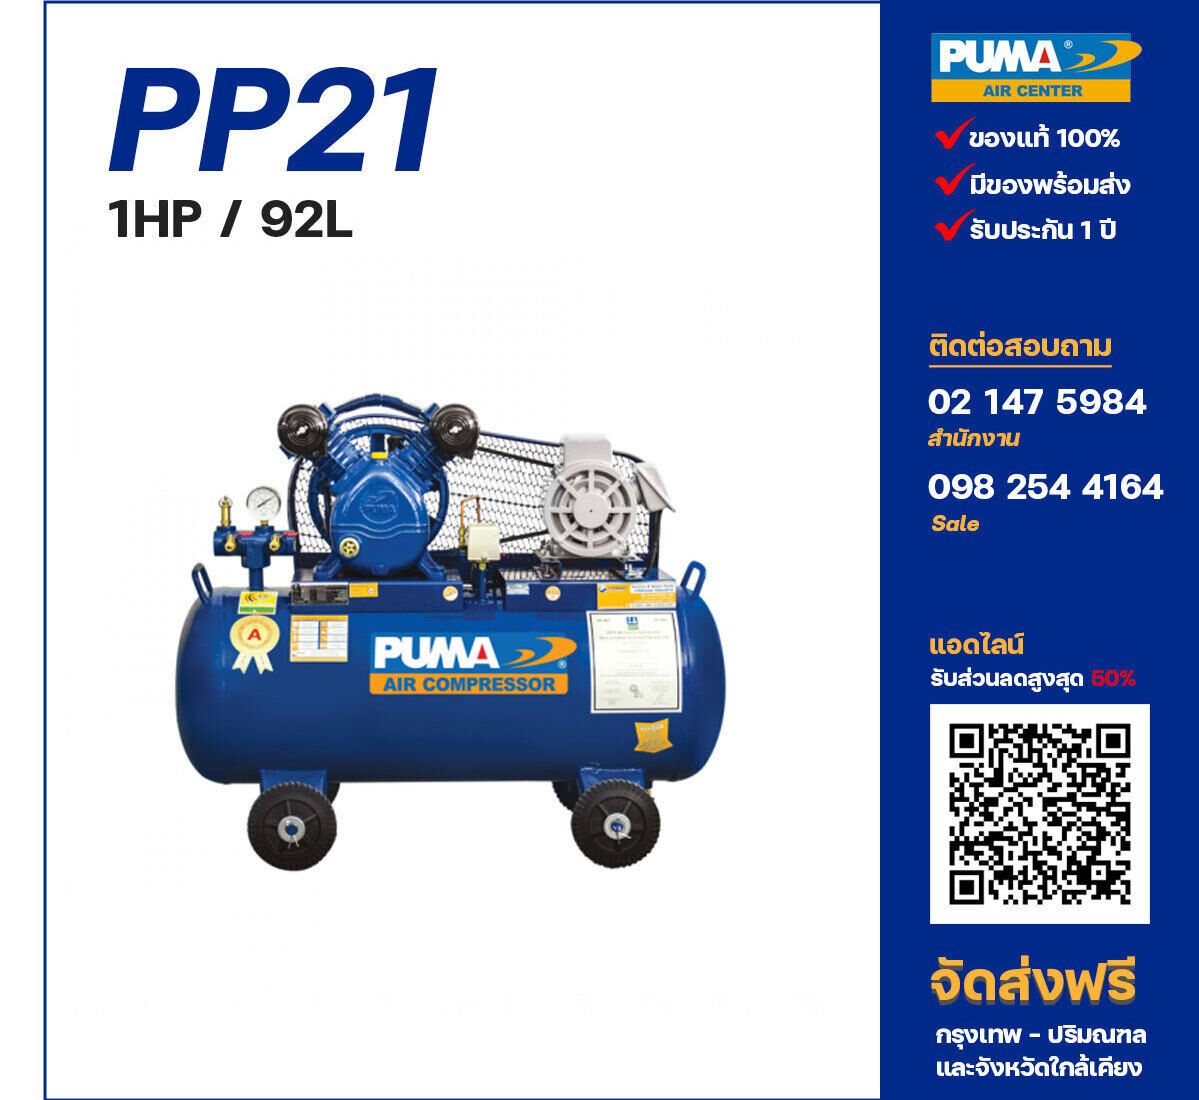 ปั๊มลมพูม่า PUMA PP21-PPM220V ปั๊มลมลูกสูบ ขนาด 2 สูบ 1 แรงม้า 92 ลิตร PUMA พร้อมมอเตอร์ PUMA ไฟ 220V ส่งฟรี กรุงเทพฯ-ปริมณฑล รับประกัน 1 ปี